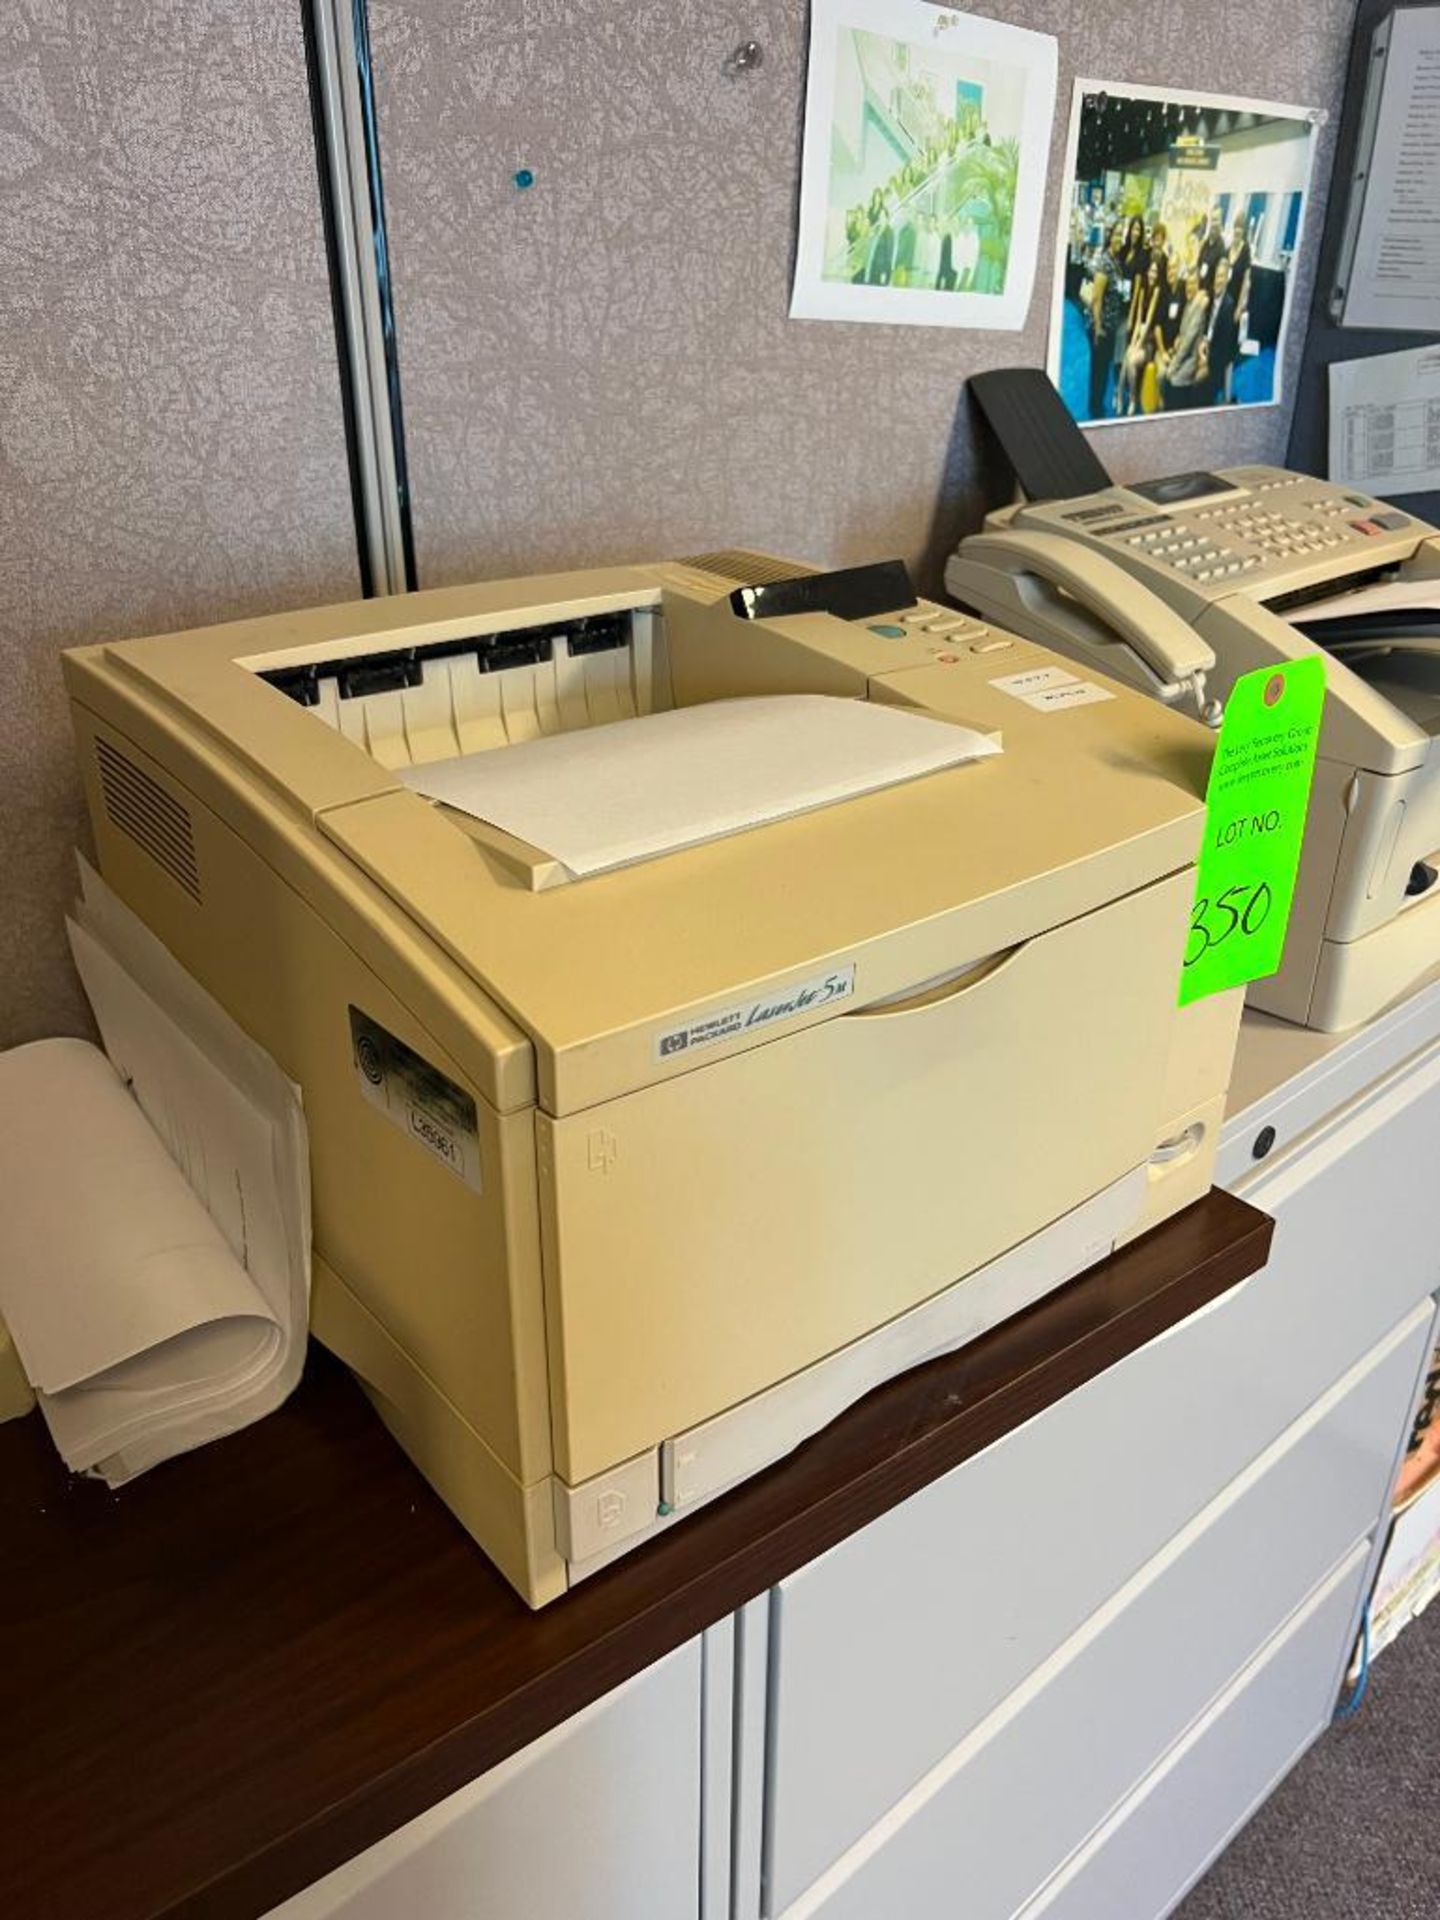 Hewlett-Packard Model LaserJet 5m Printer - Image 3 of 3